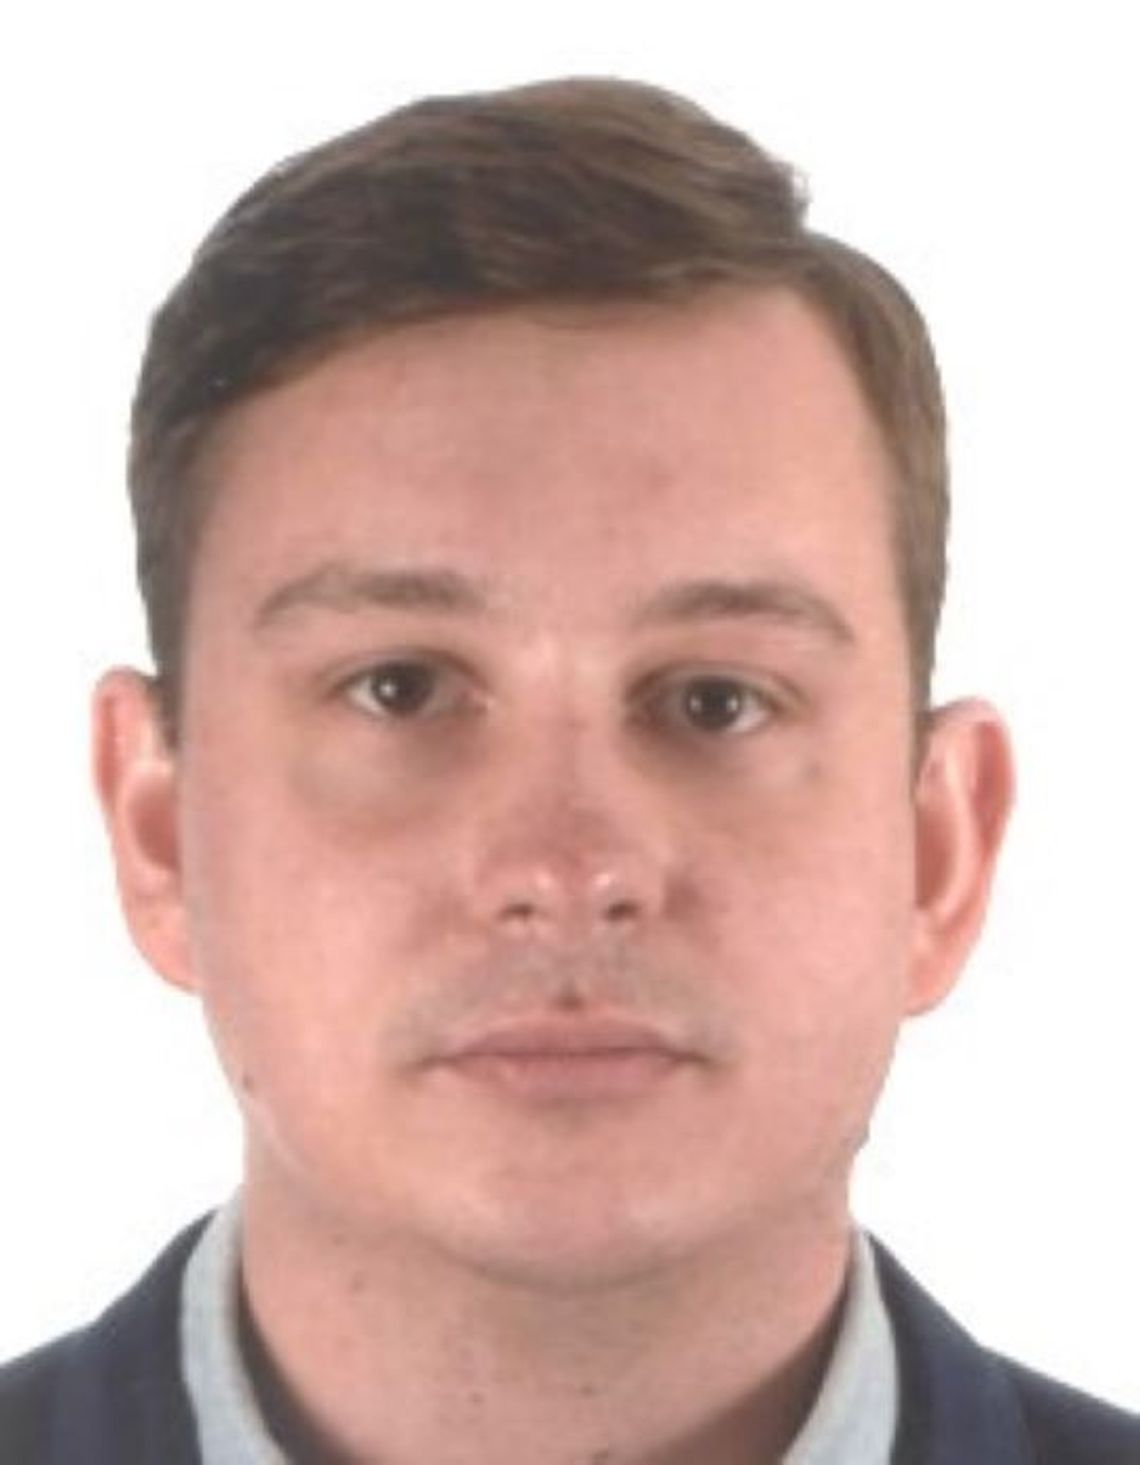 Prokuratura wydała list gończy za Sebastianem Majtczakiem, który spowodował wypadek na autostradzie A1 i publikuje wizerunek podejrzanego